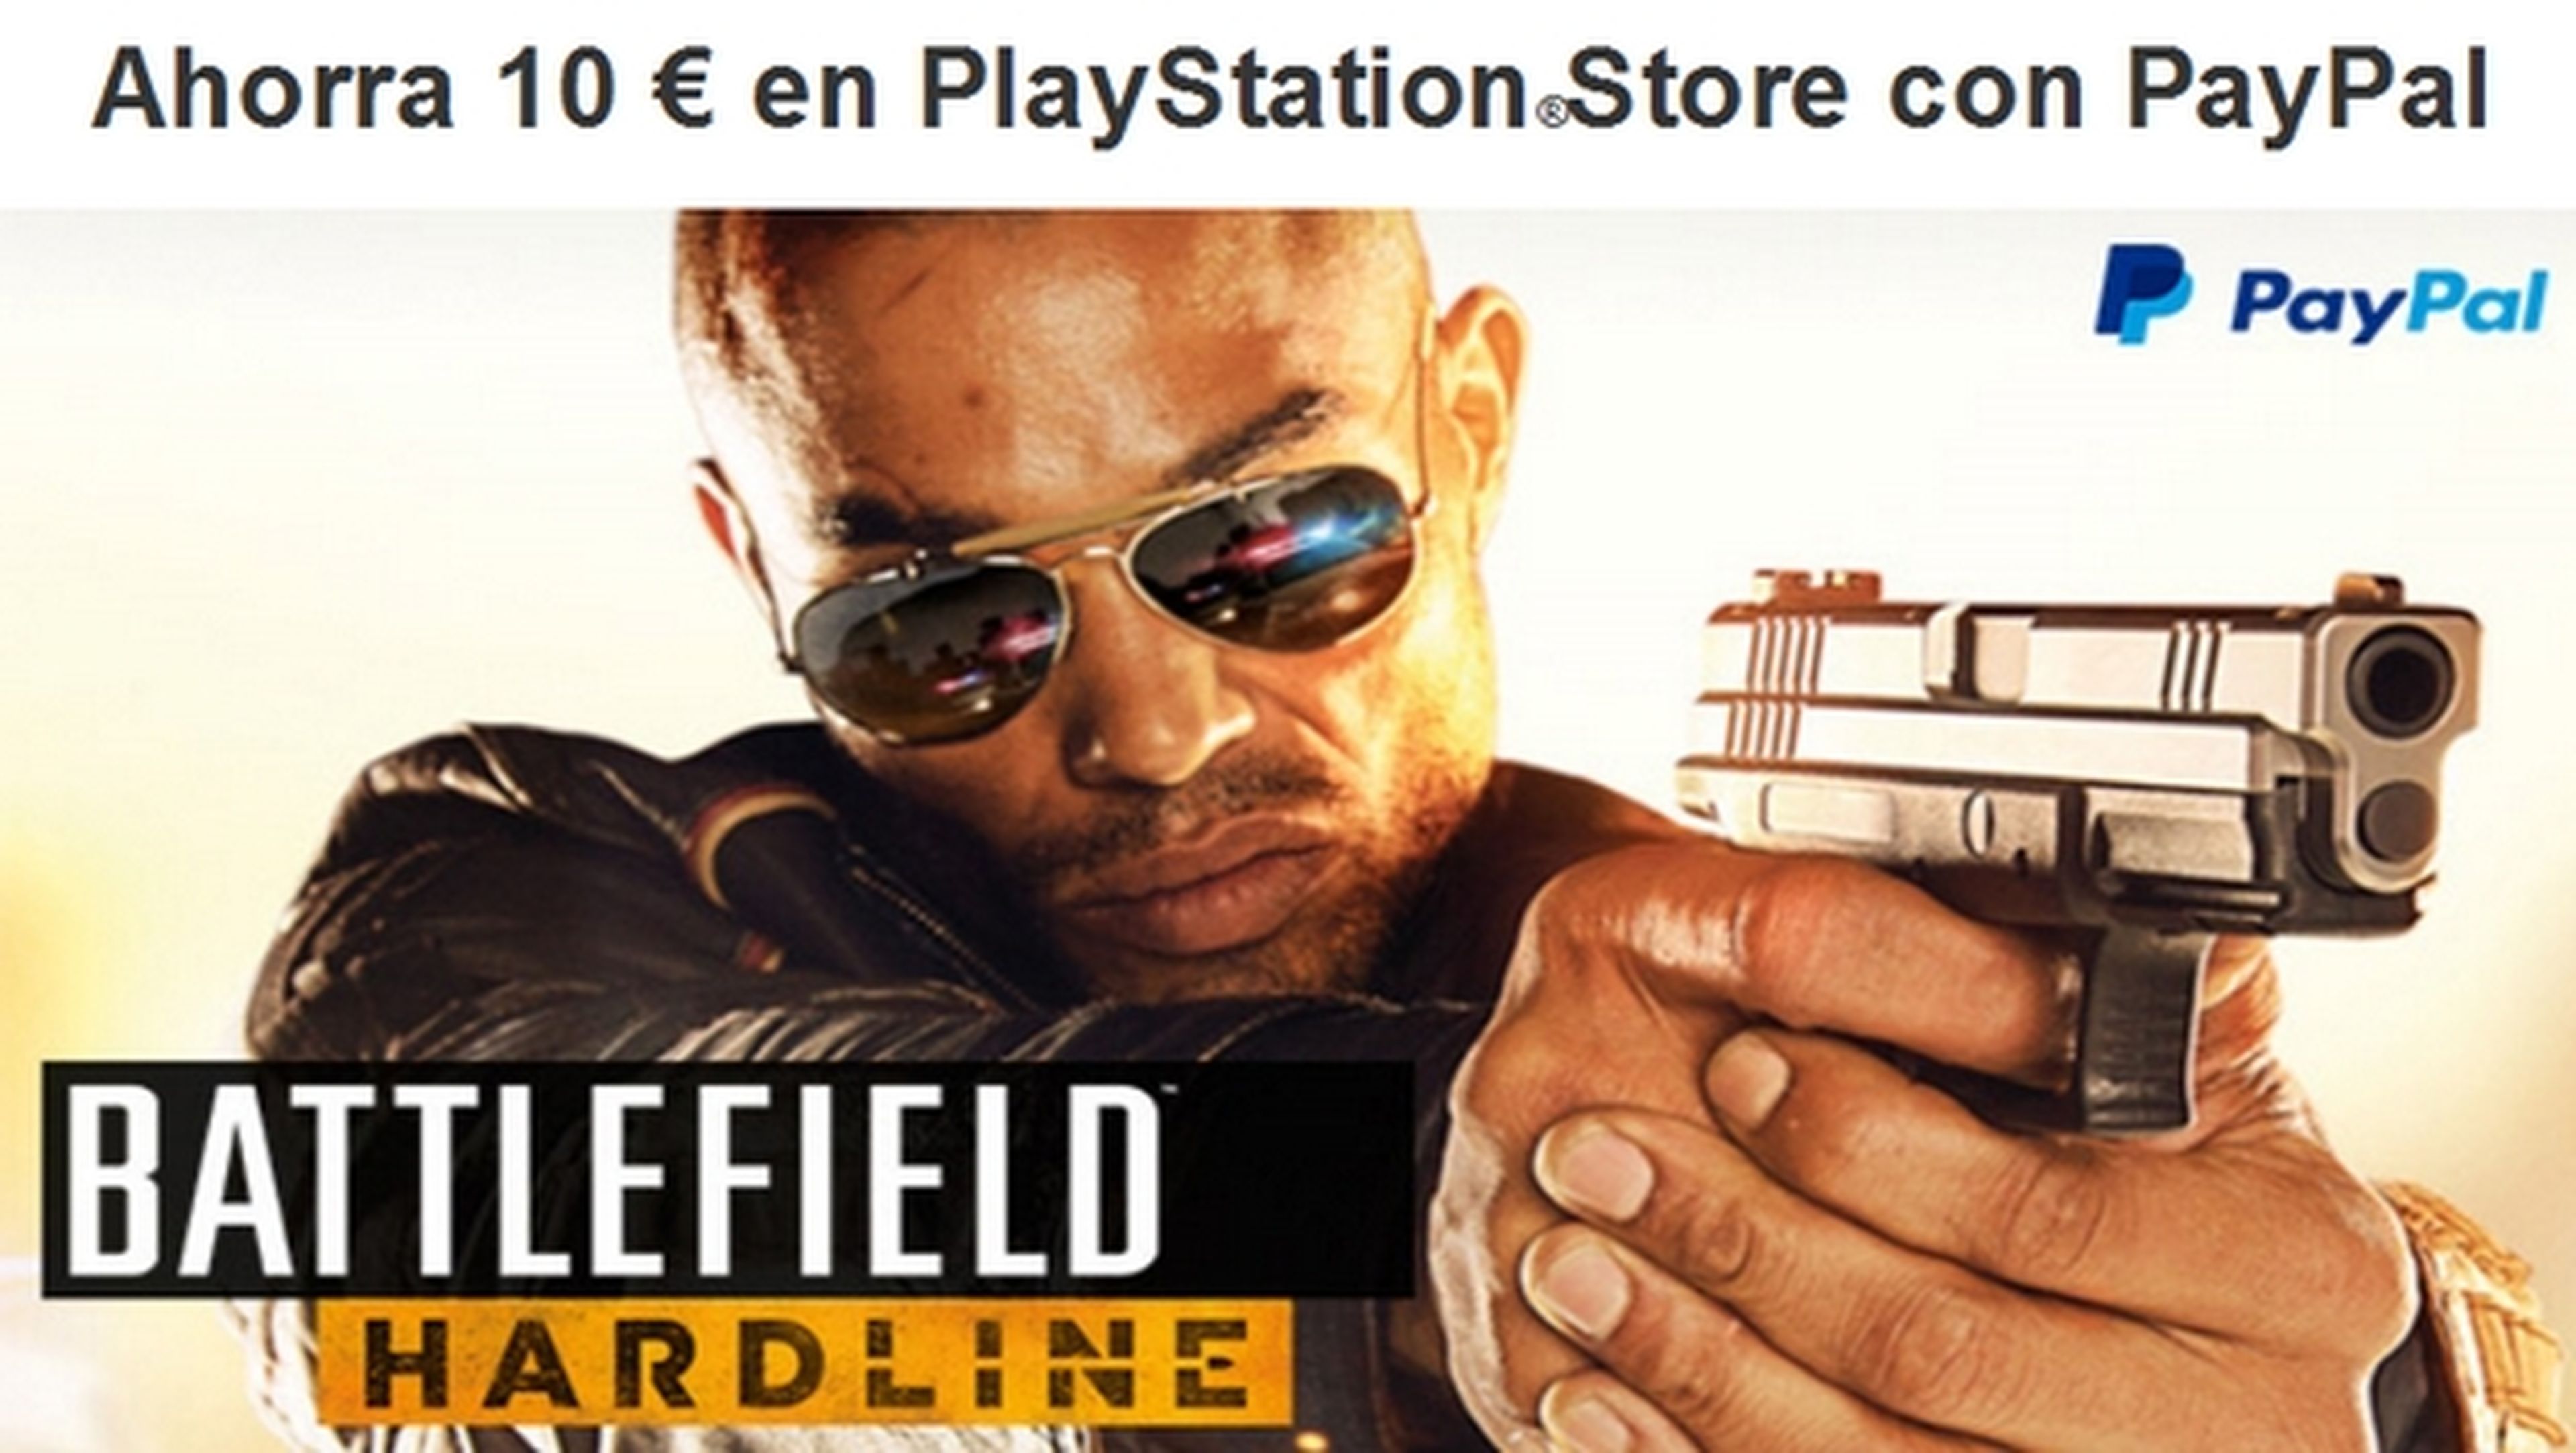 Consigue 10€ gratis en PlayStation Store con PayPal recargando el monedero.